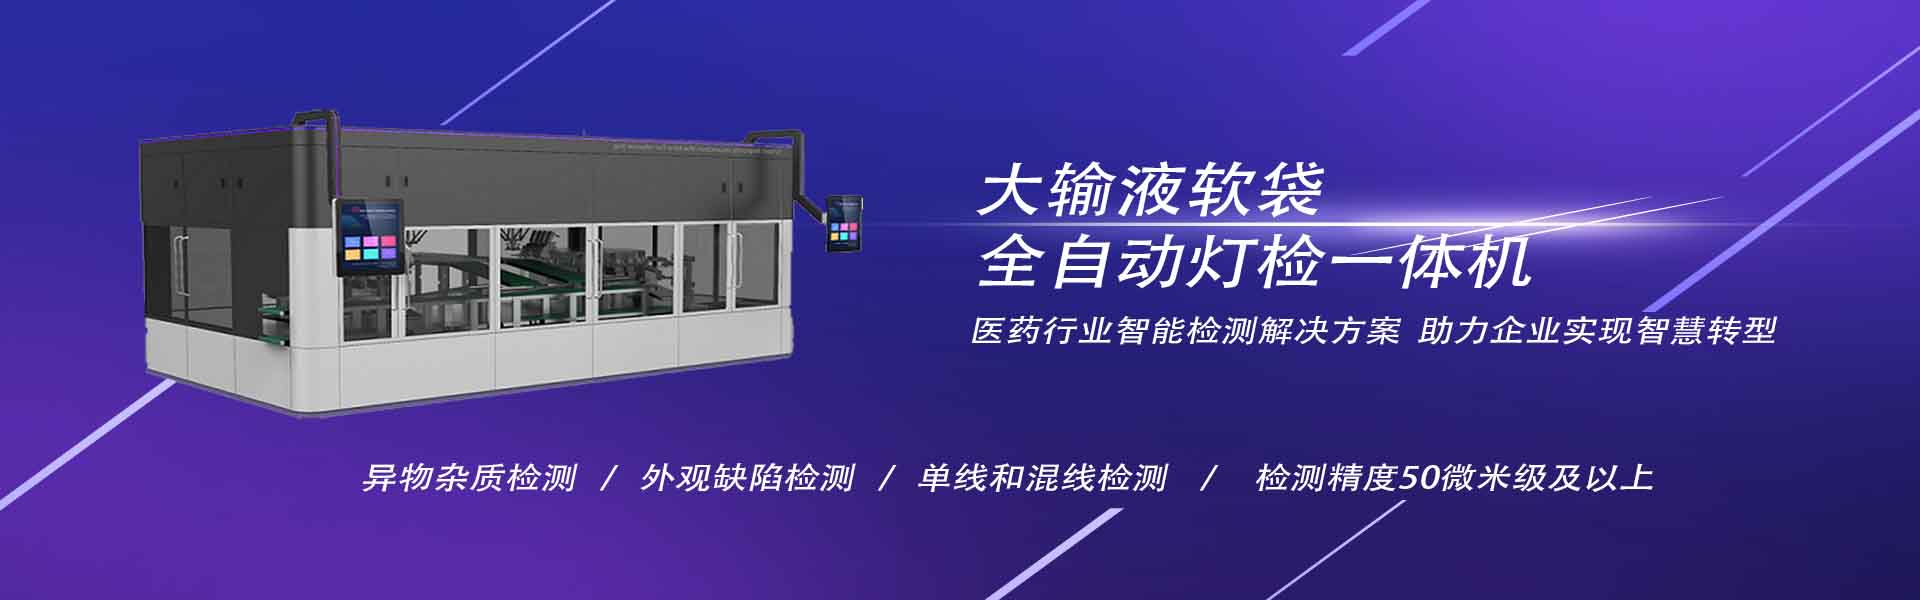 南京简智仪器设备有限公司